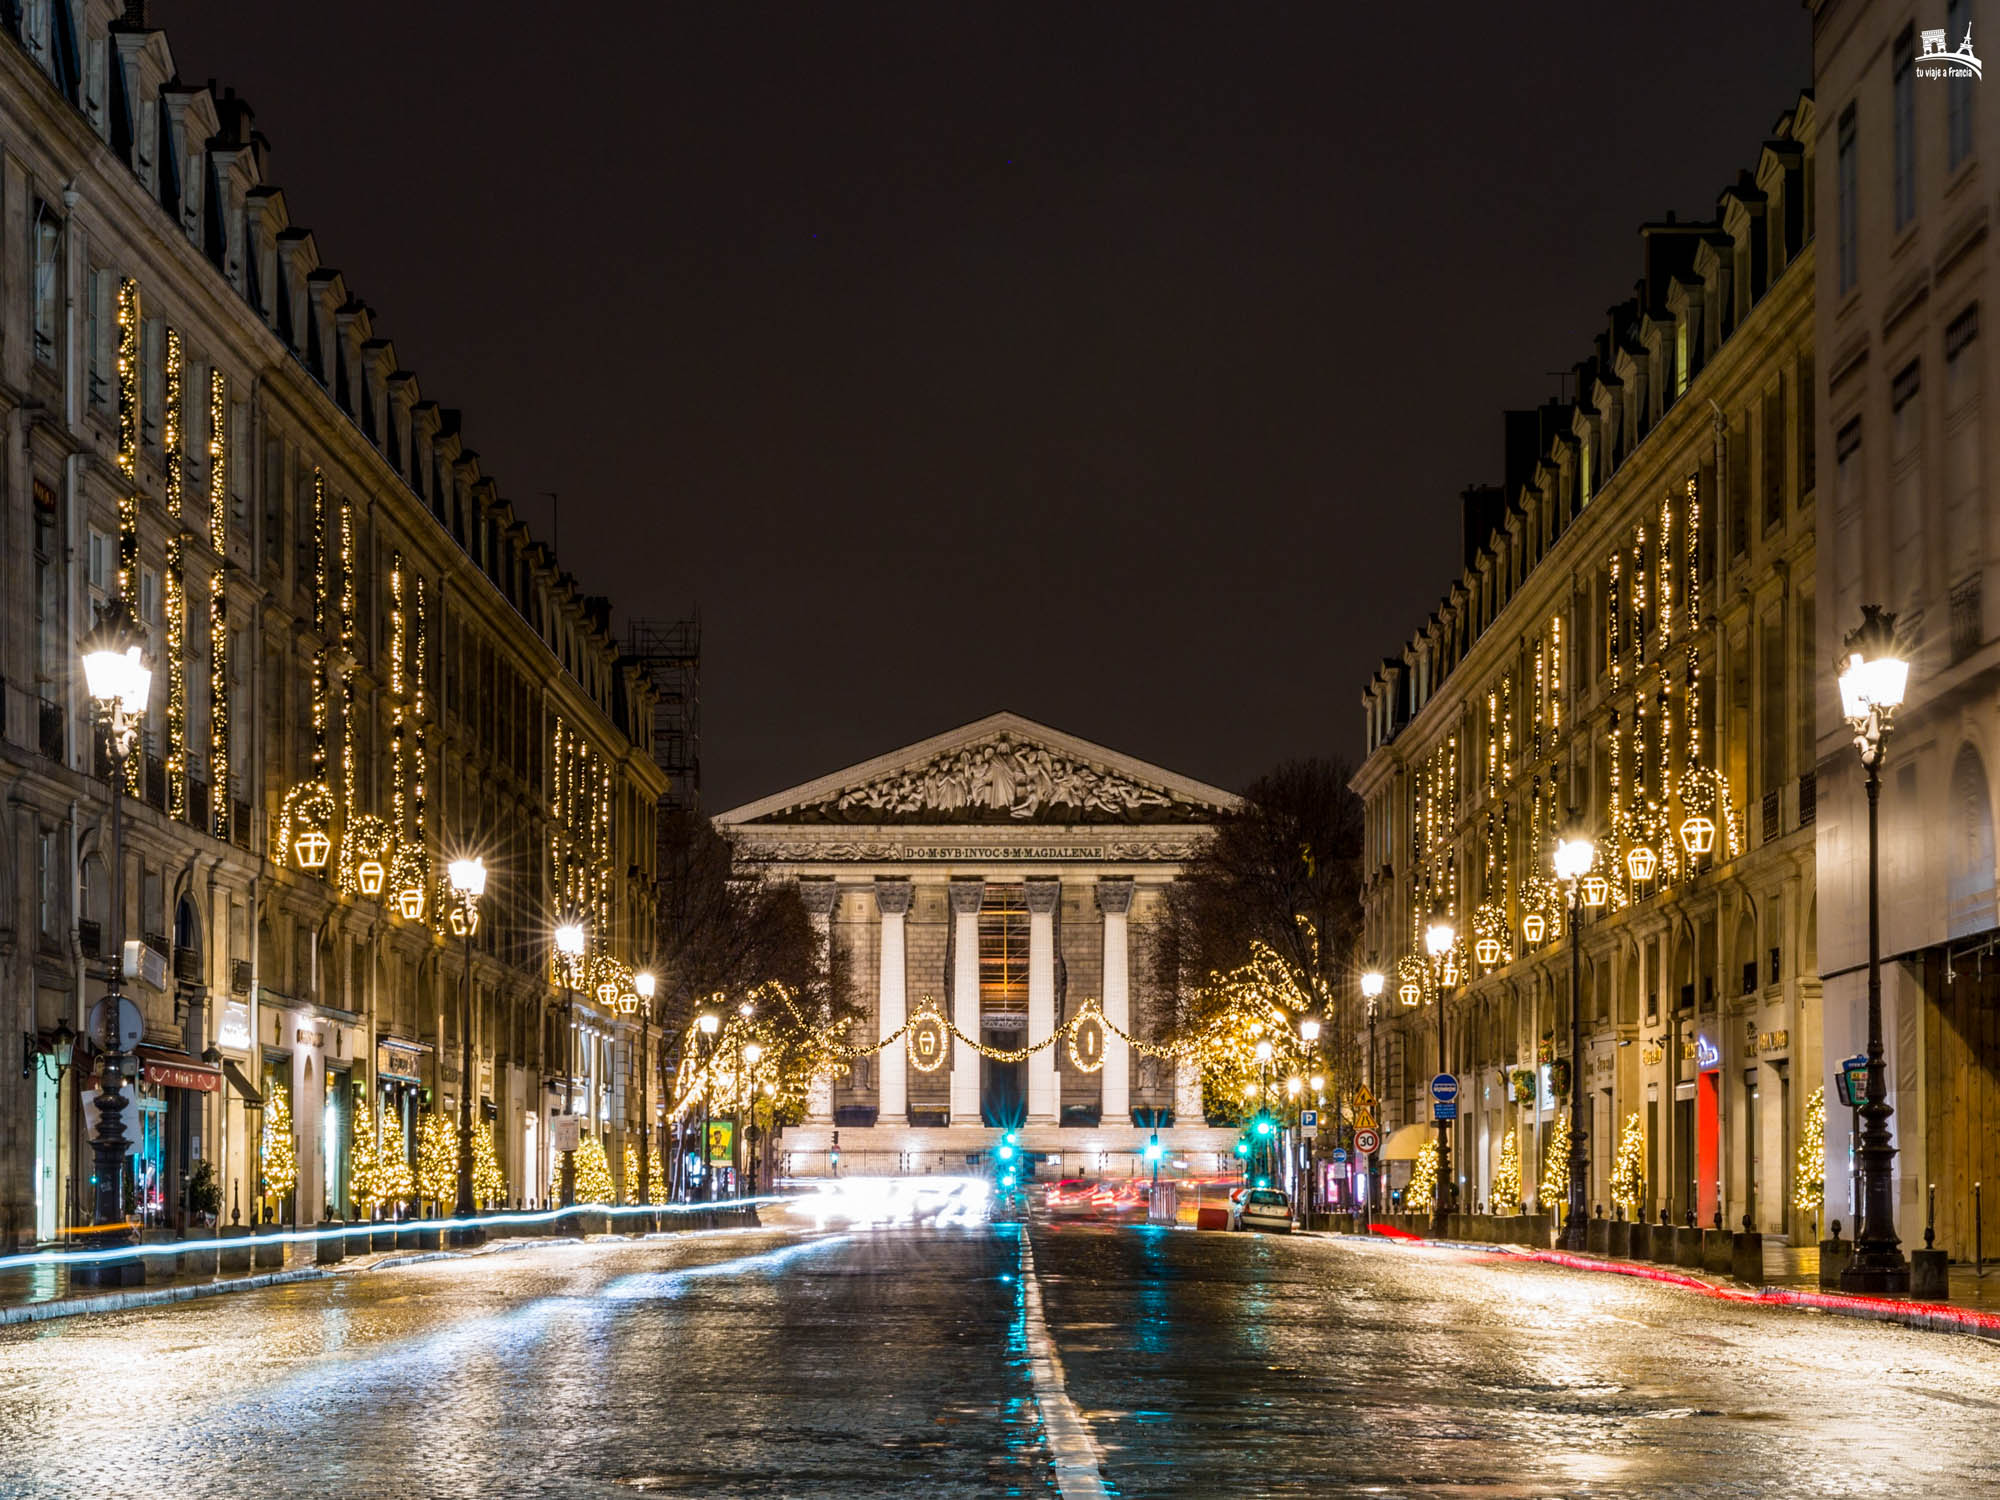 Iluminación navideña de la Rue Royale, París en Navidad